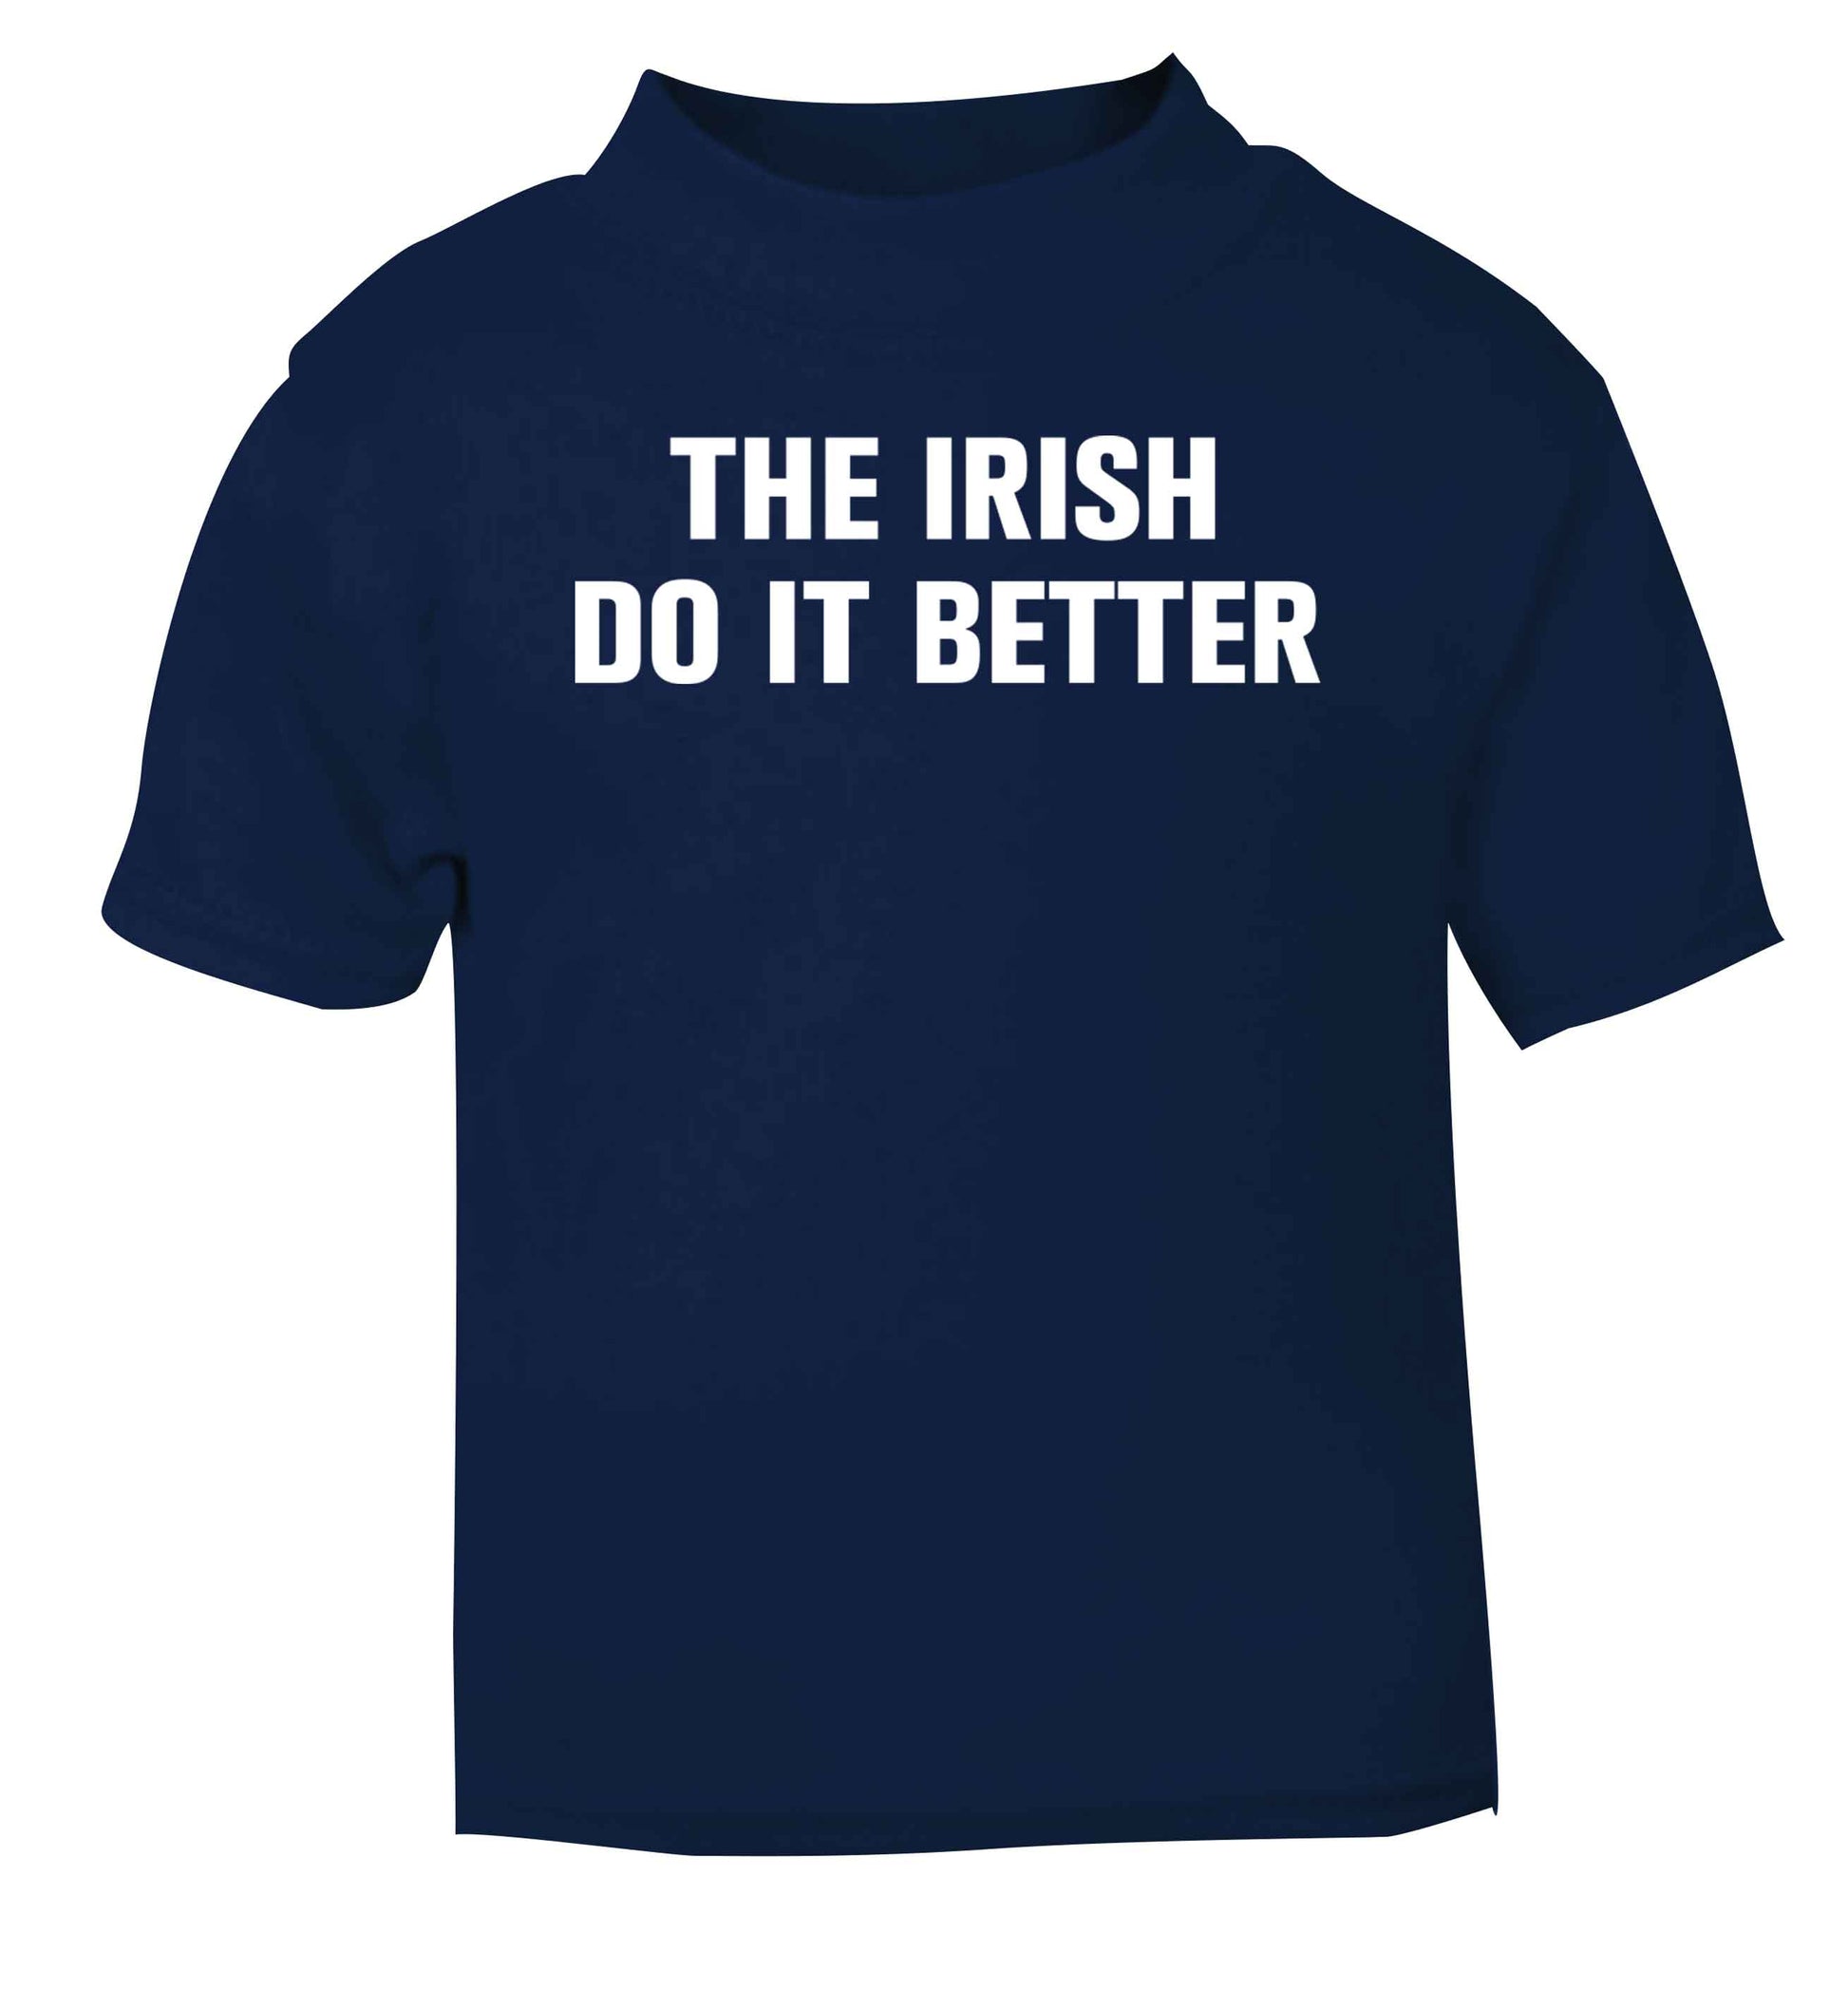 The Irish do it better navy baby toddler Tshirt 2 Years